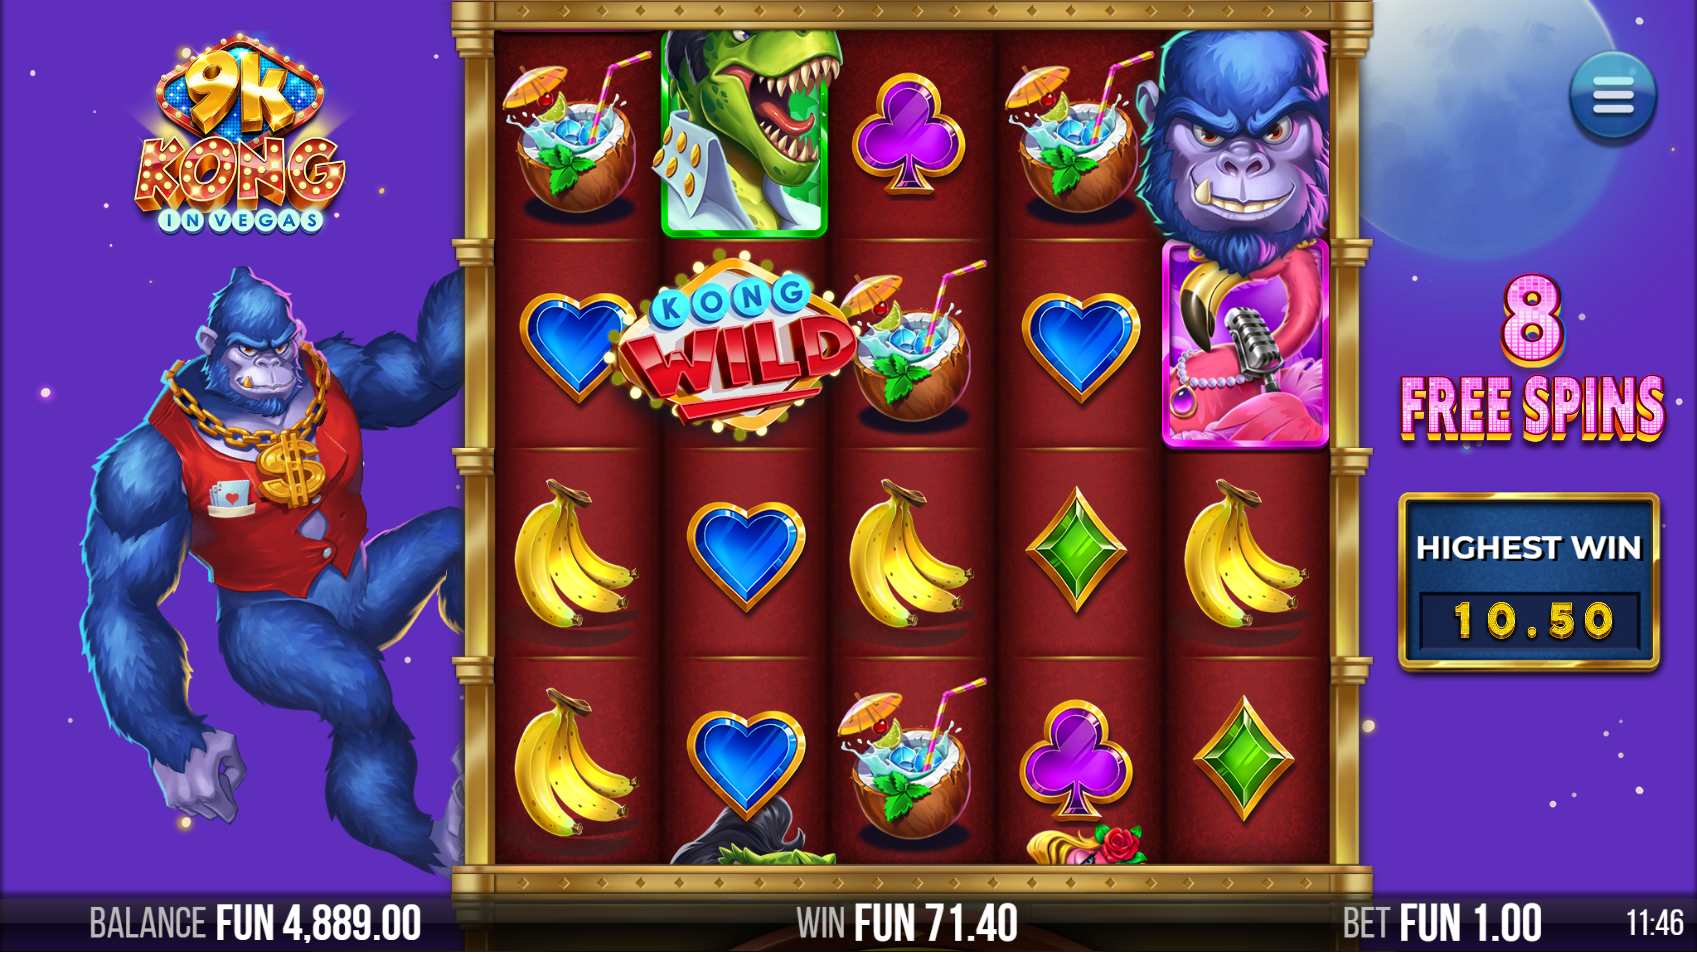 9K Kong in Vegas Free Spins